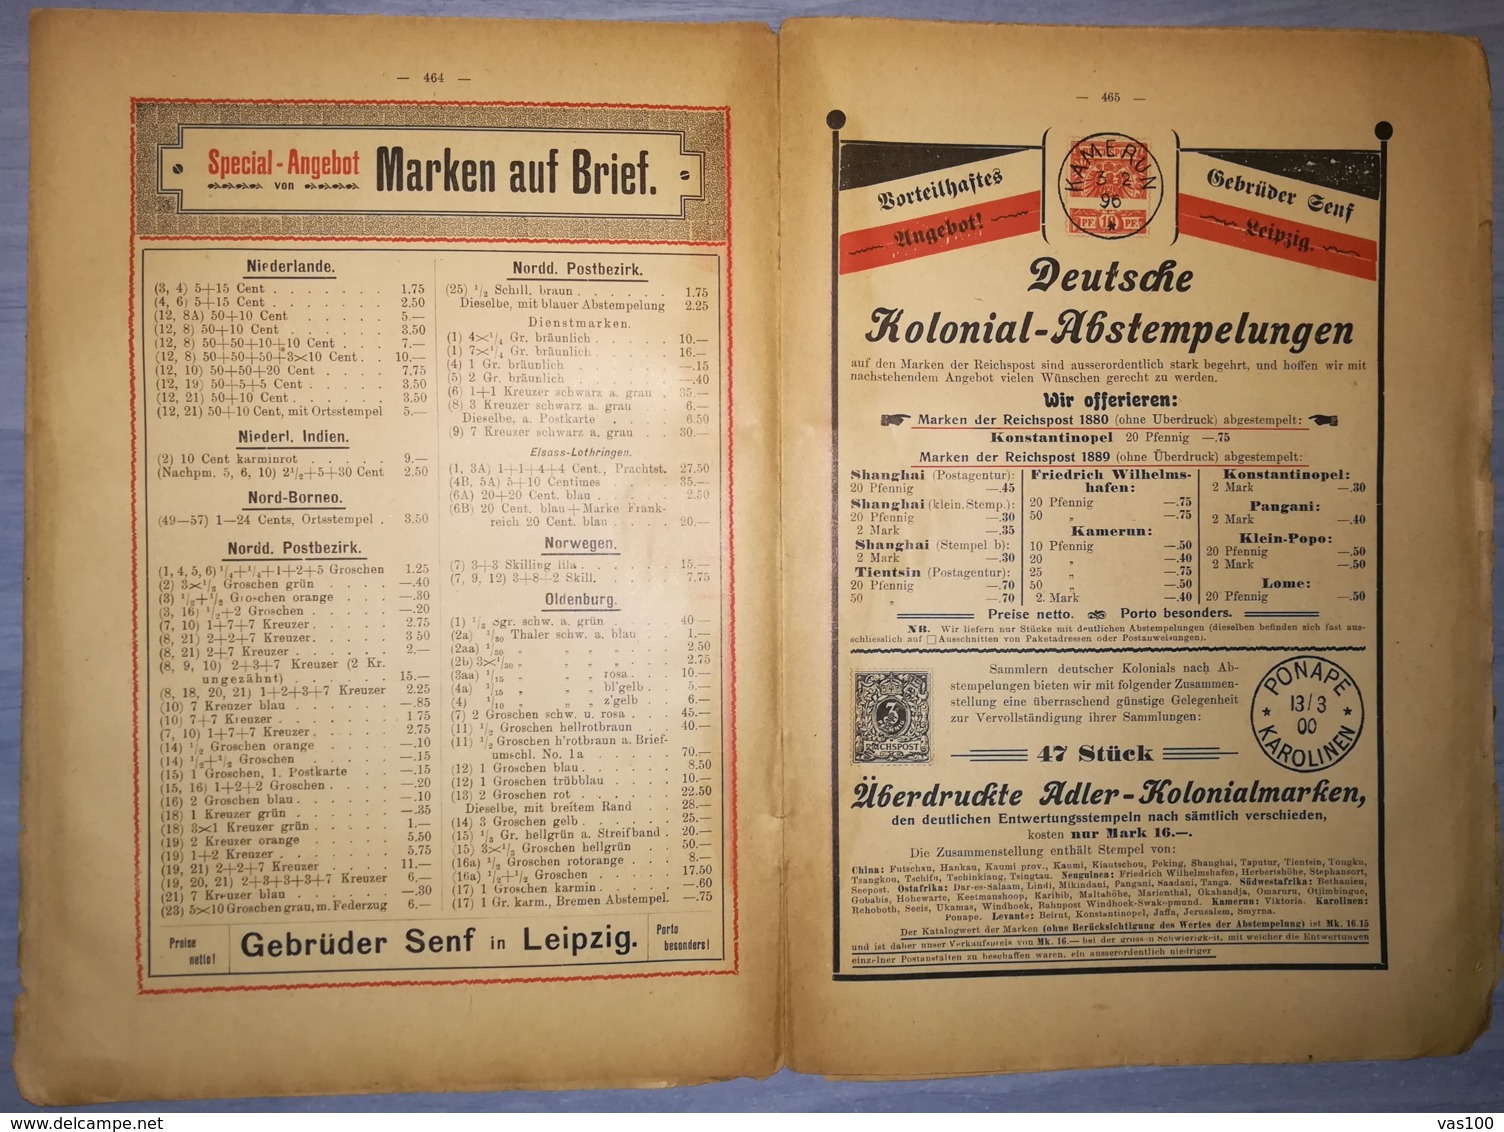 ILLUSTRATED STAMPS JOURNAL- ILLUSTRIERTES BRIEFMARKEN JOURNAL MAGAZINE, LEIPZIG, NR 24, DECEMBER 1902, GERMANY - Allemand (jusque 1940)